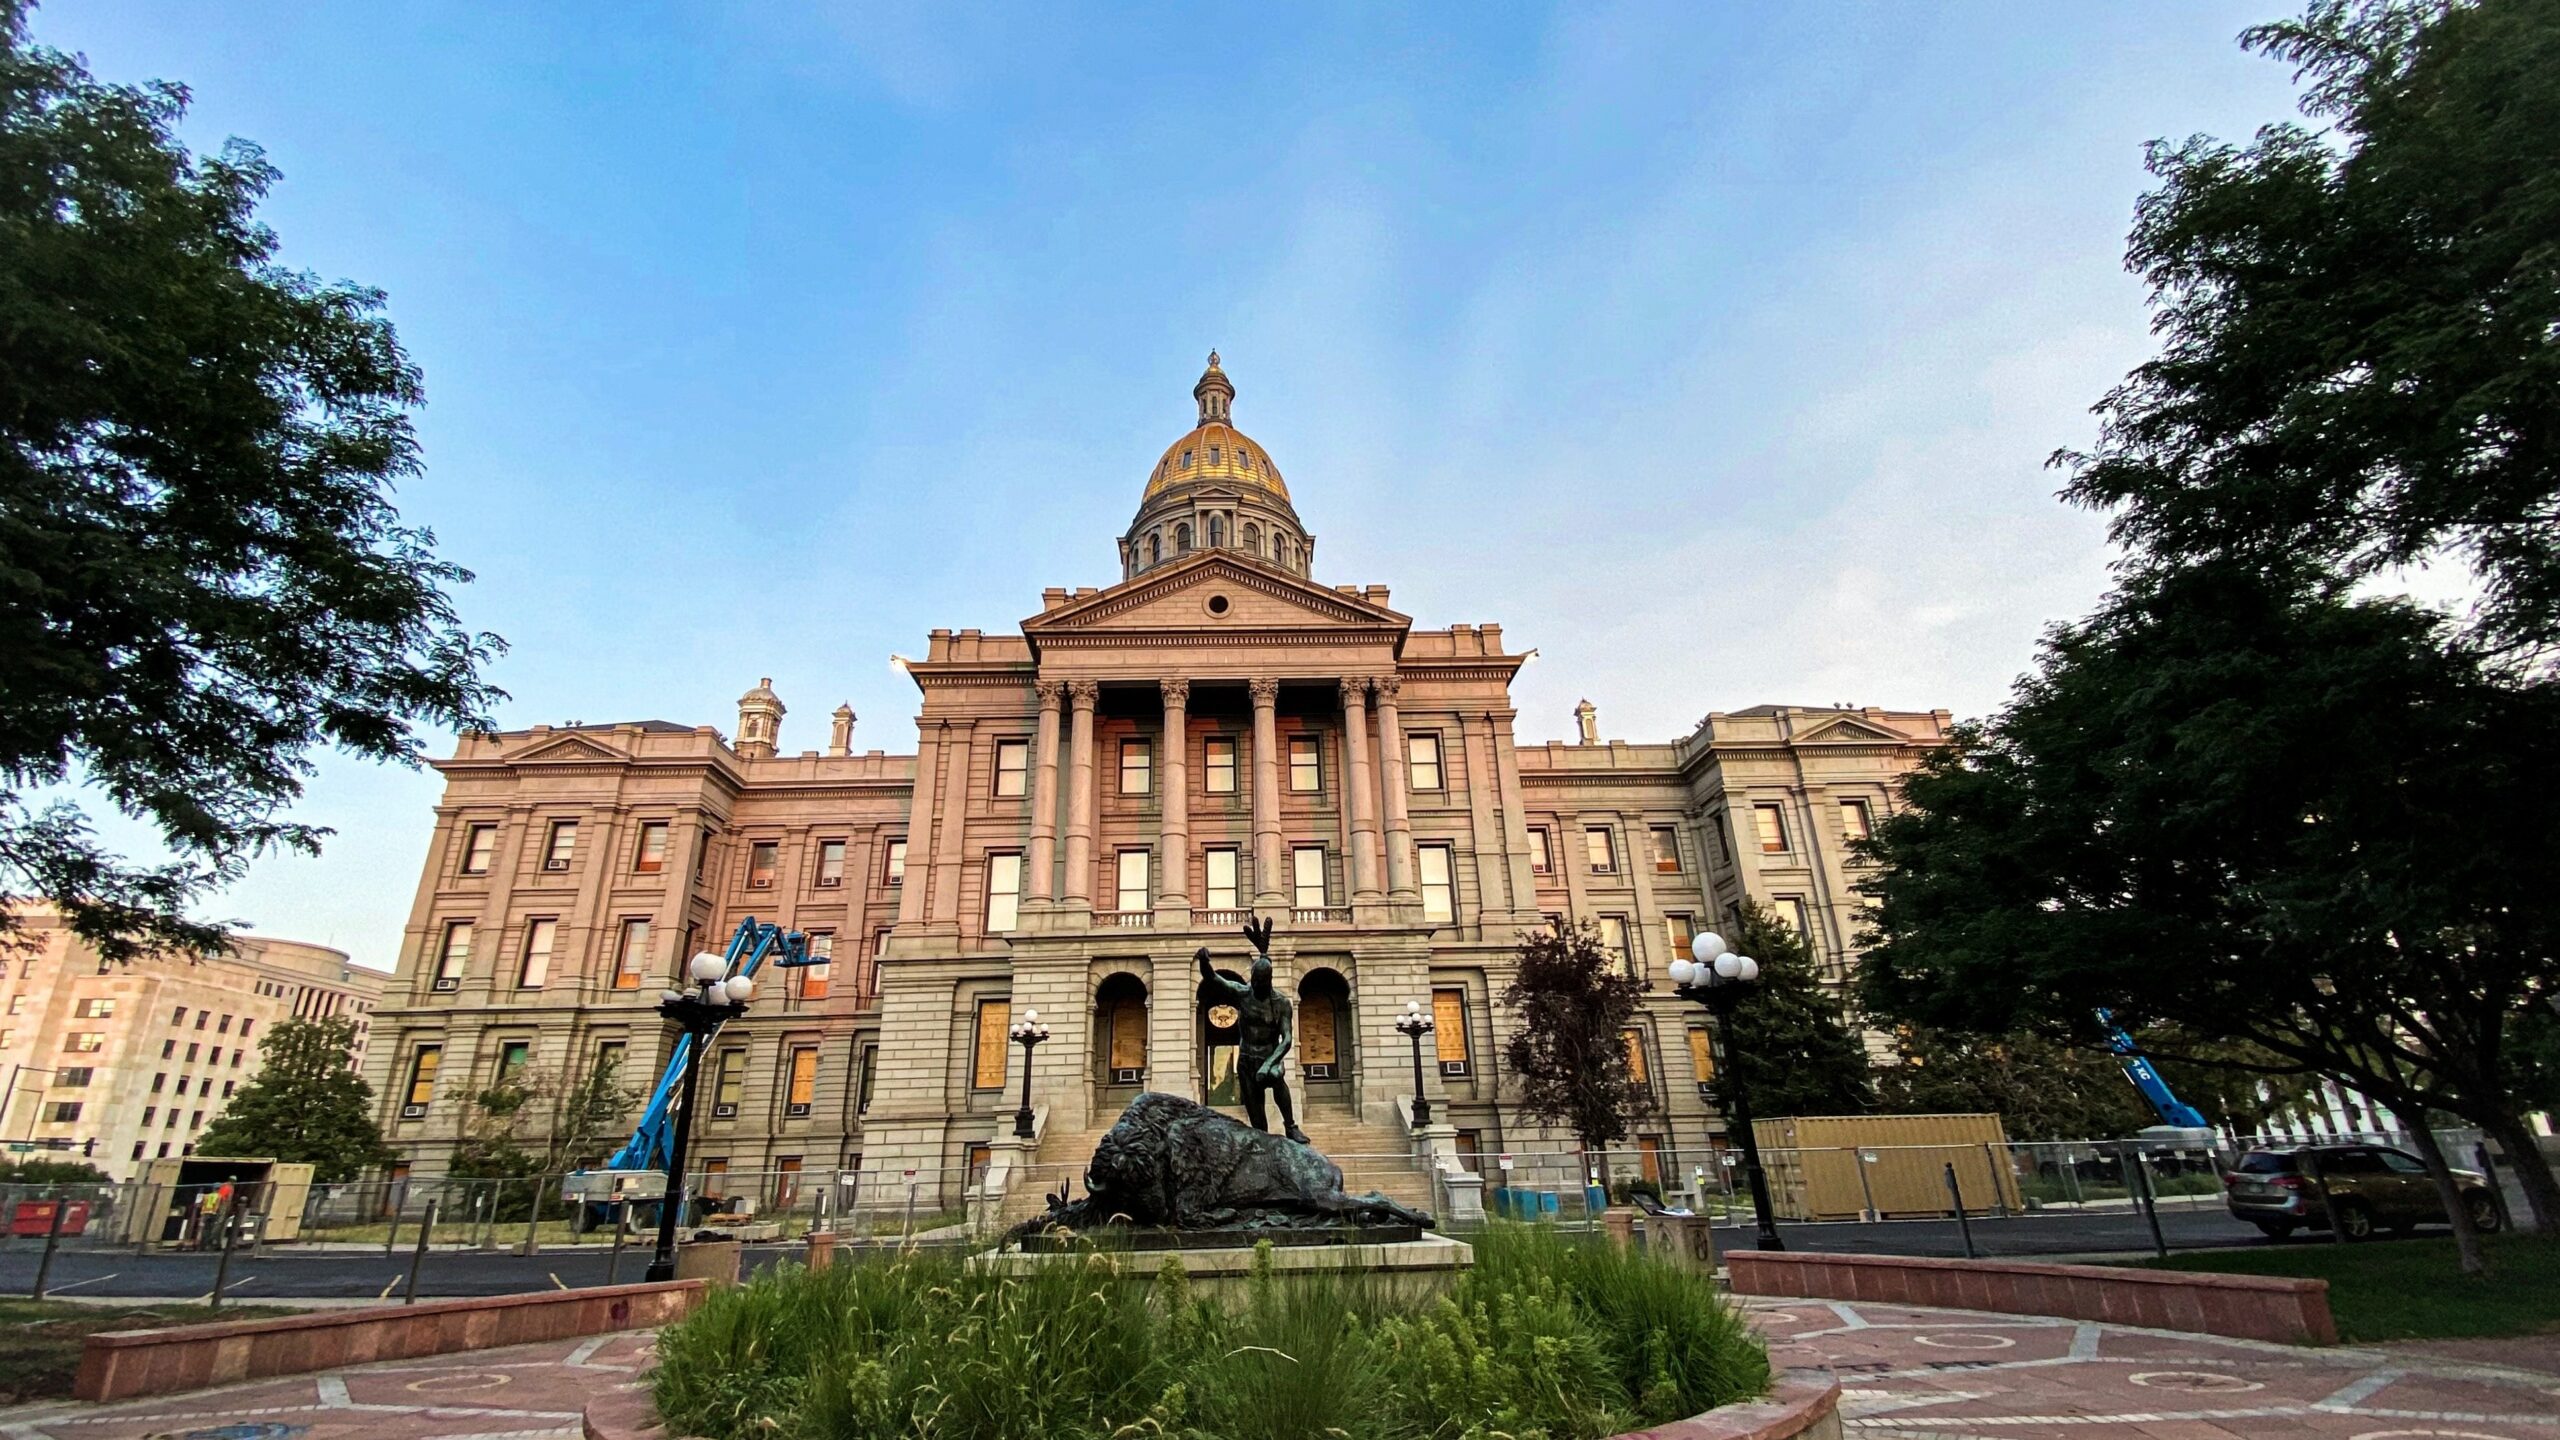 Colorado Politics: “Colorado’s housing market is at risk – again”